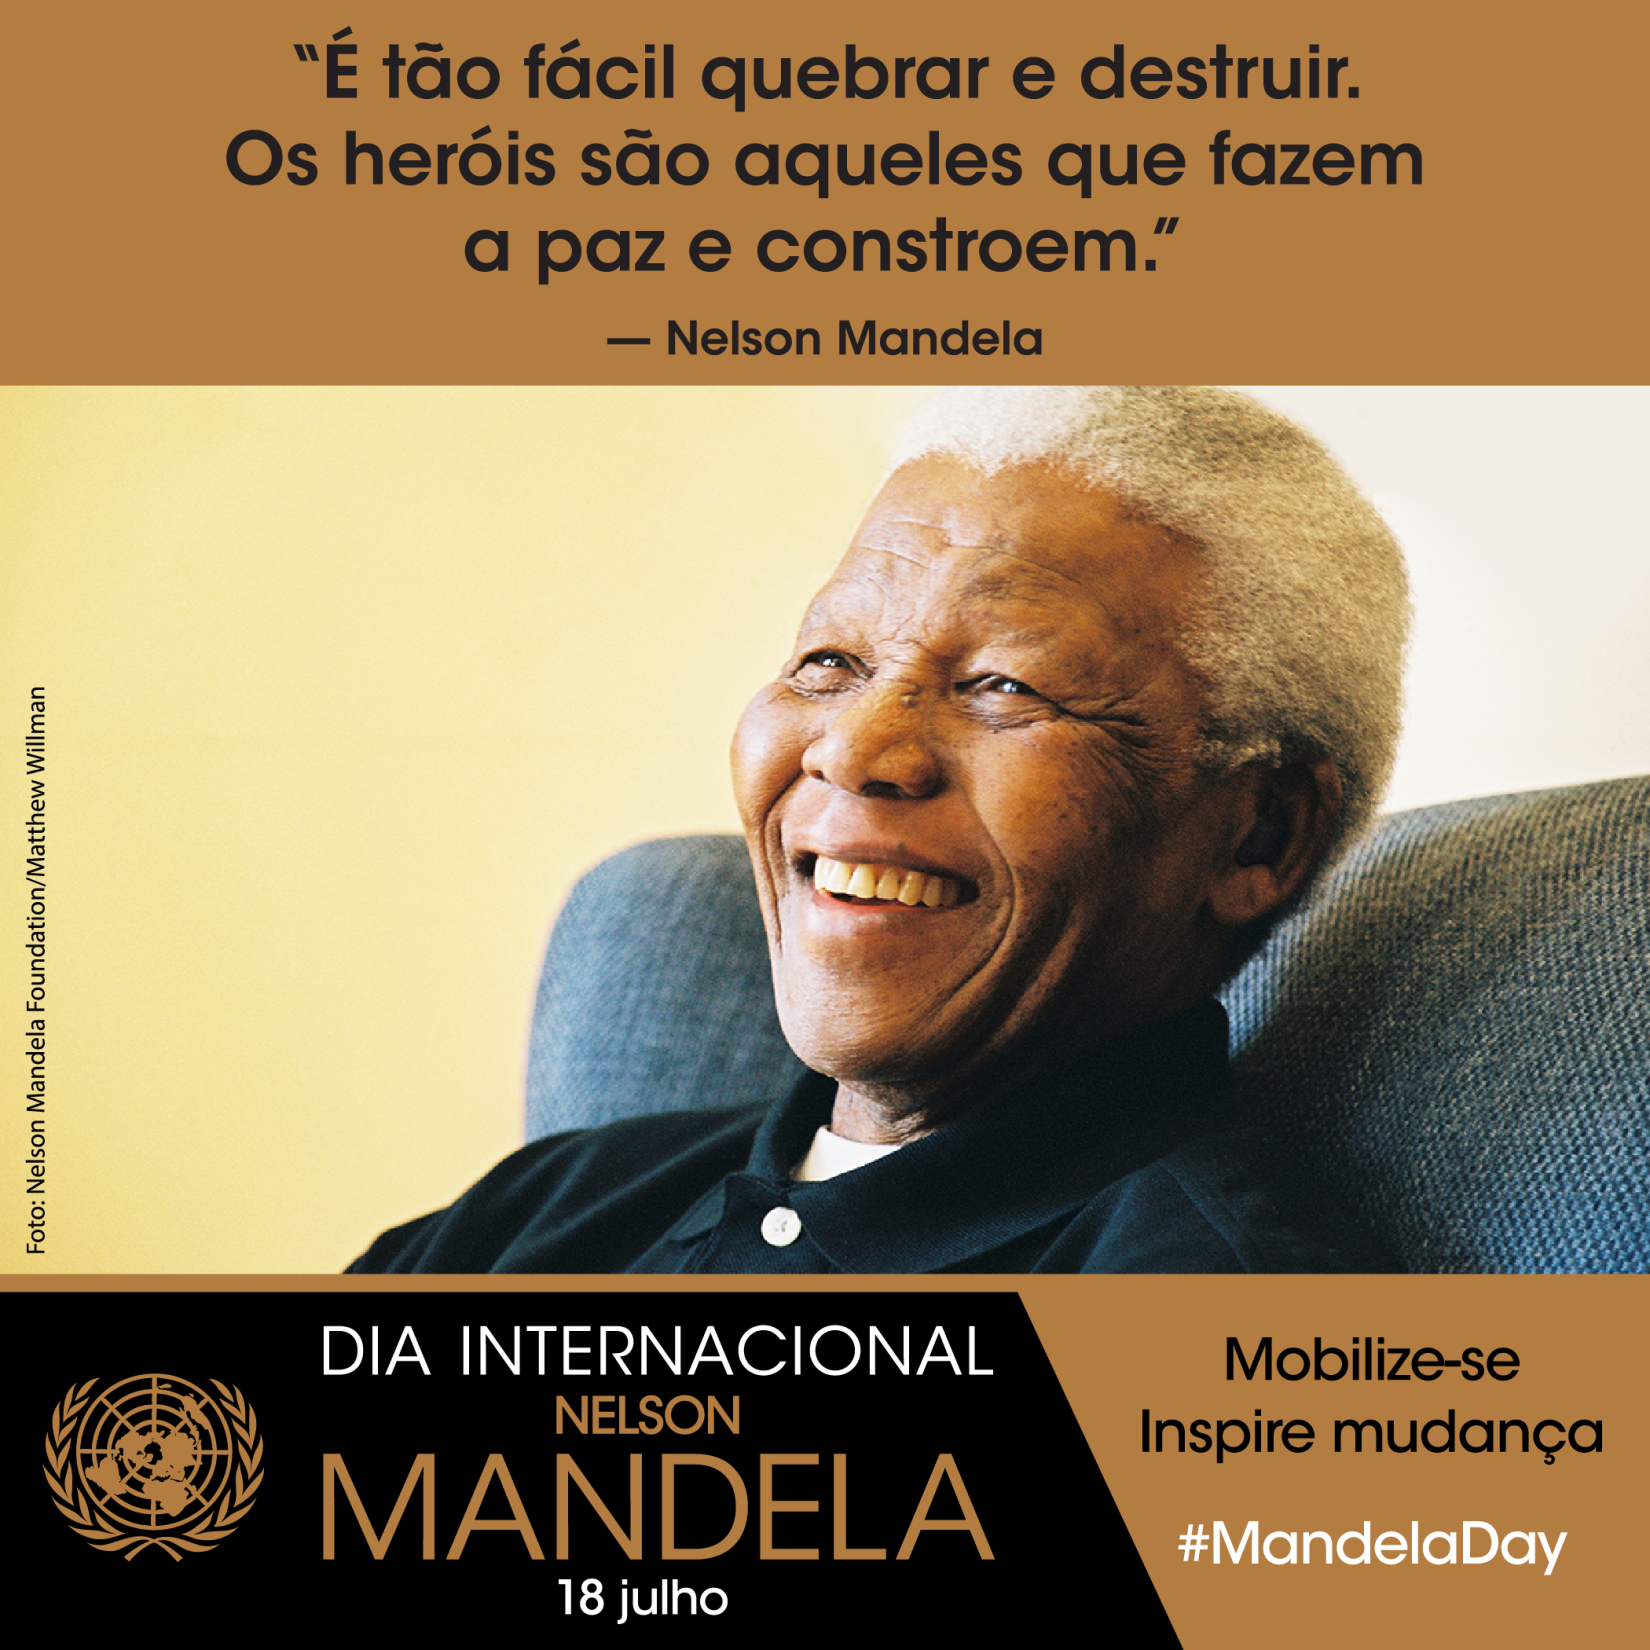 O Dia Internacional Nelson Mandela, celebrado em 18 de julho, promove os valores e a dedicação de Mandela à reconciliação e resolução de conflitos, aos direitos humanos, à luta contra a pobreza e à promoção da justiça social. 